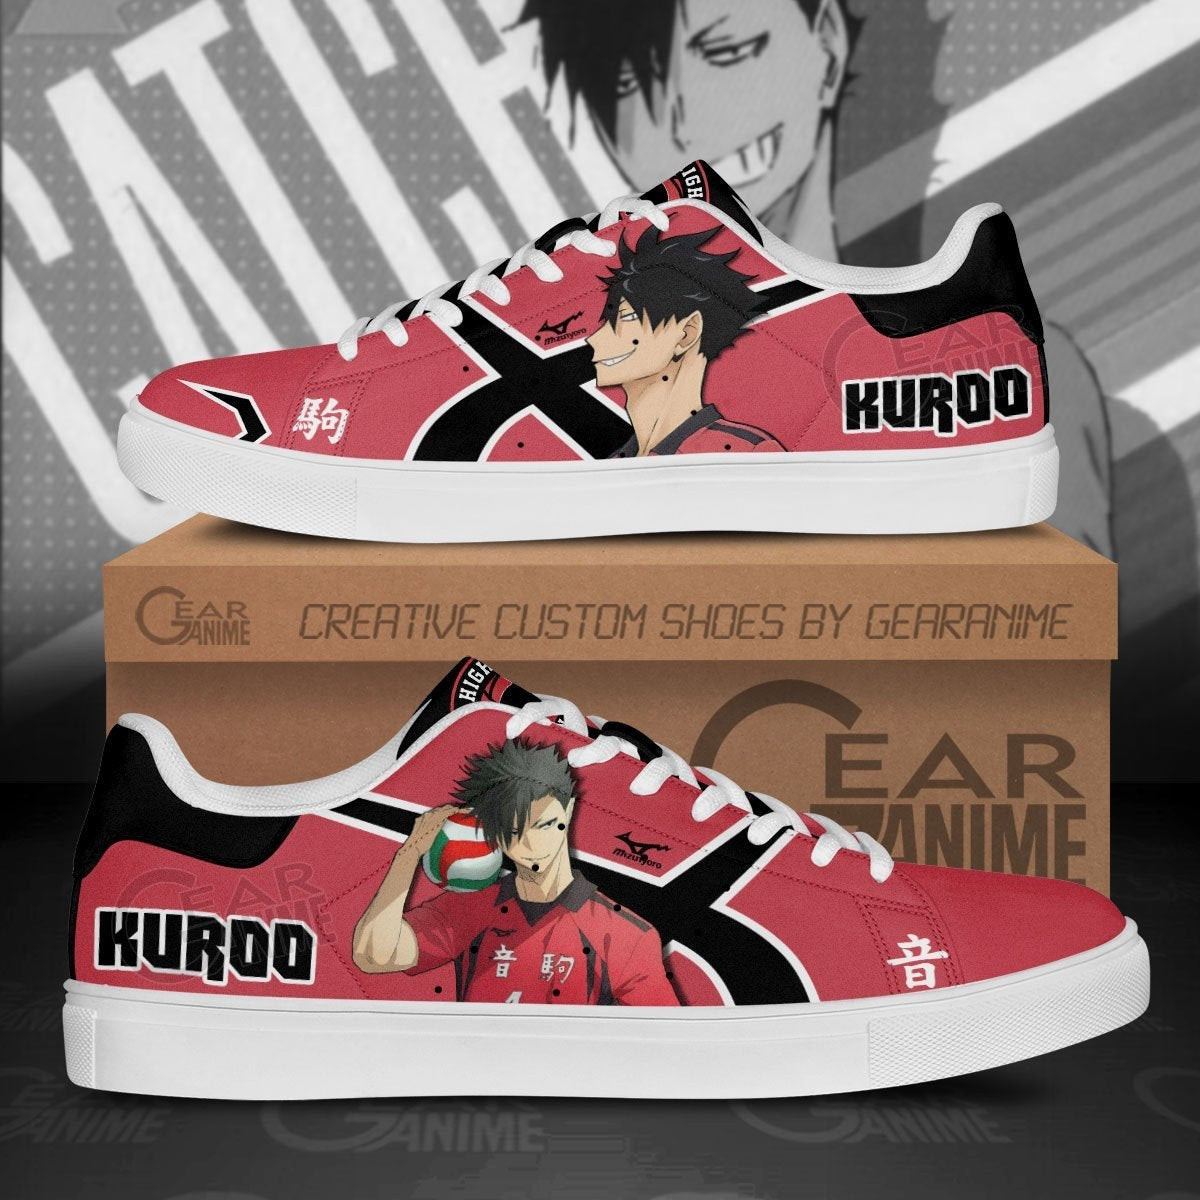 Tetsuro Kuroo Skate Shoes Custom Haikyuu Anime Shoes - 1 - GearOtaku